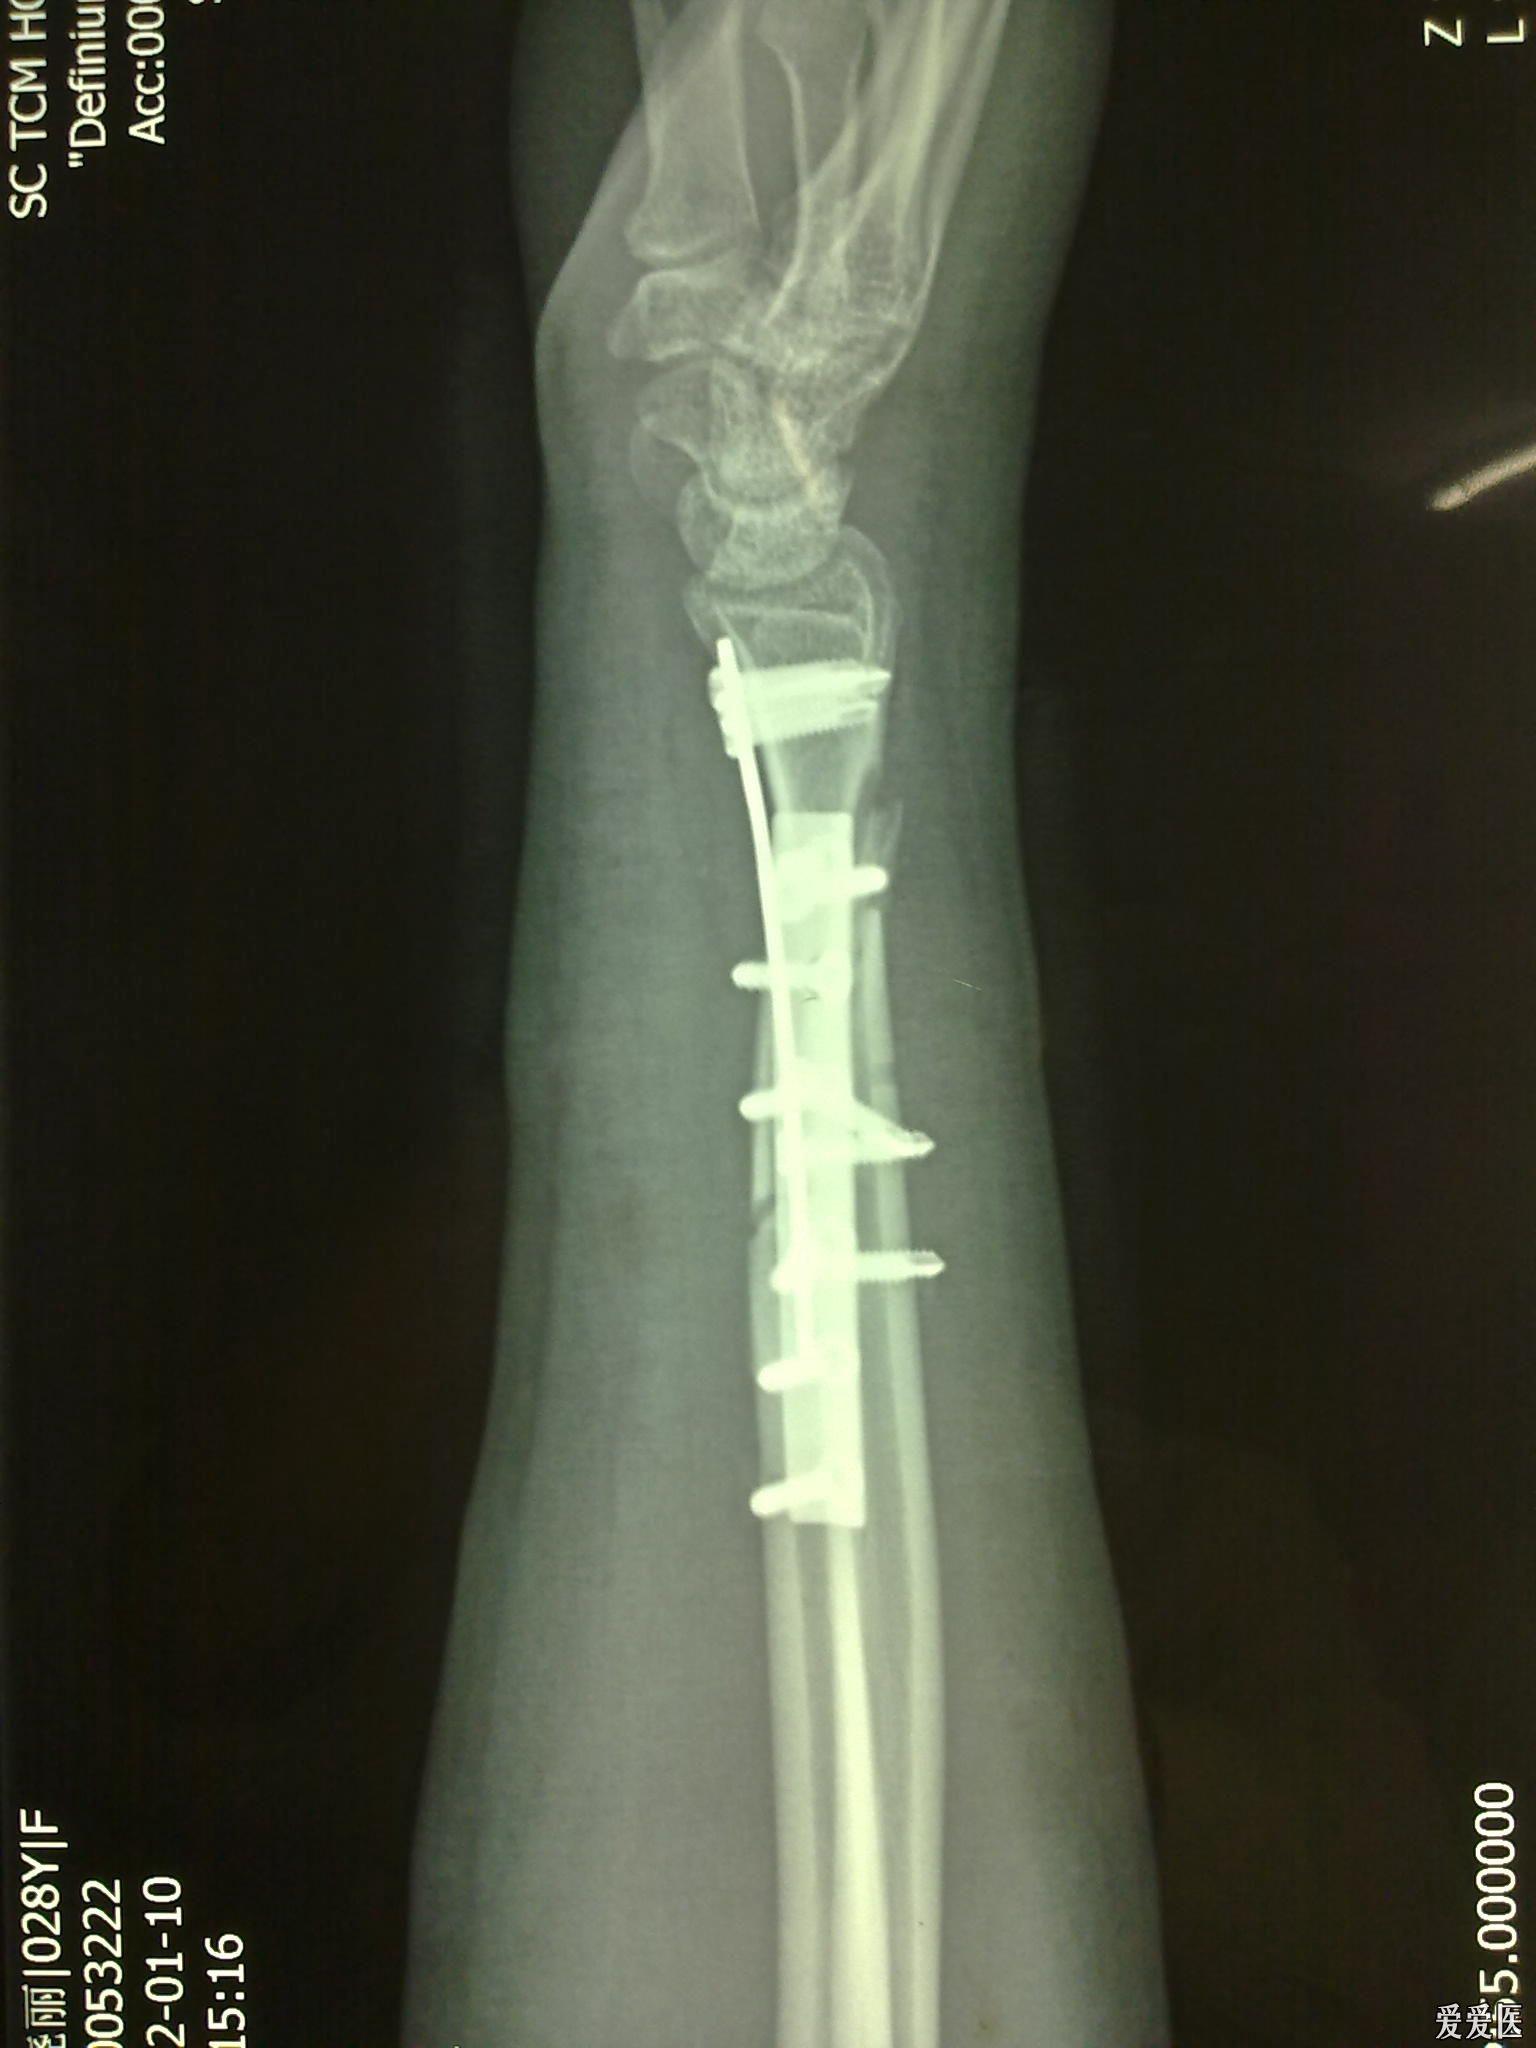 右桡骨远端骨折断裂图片